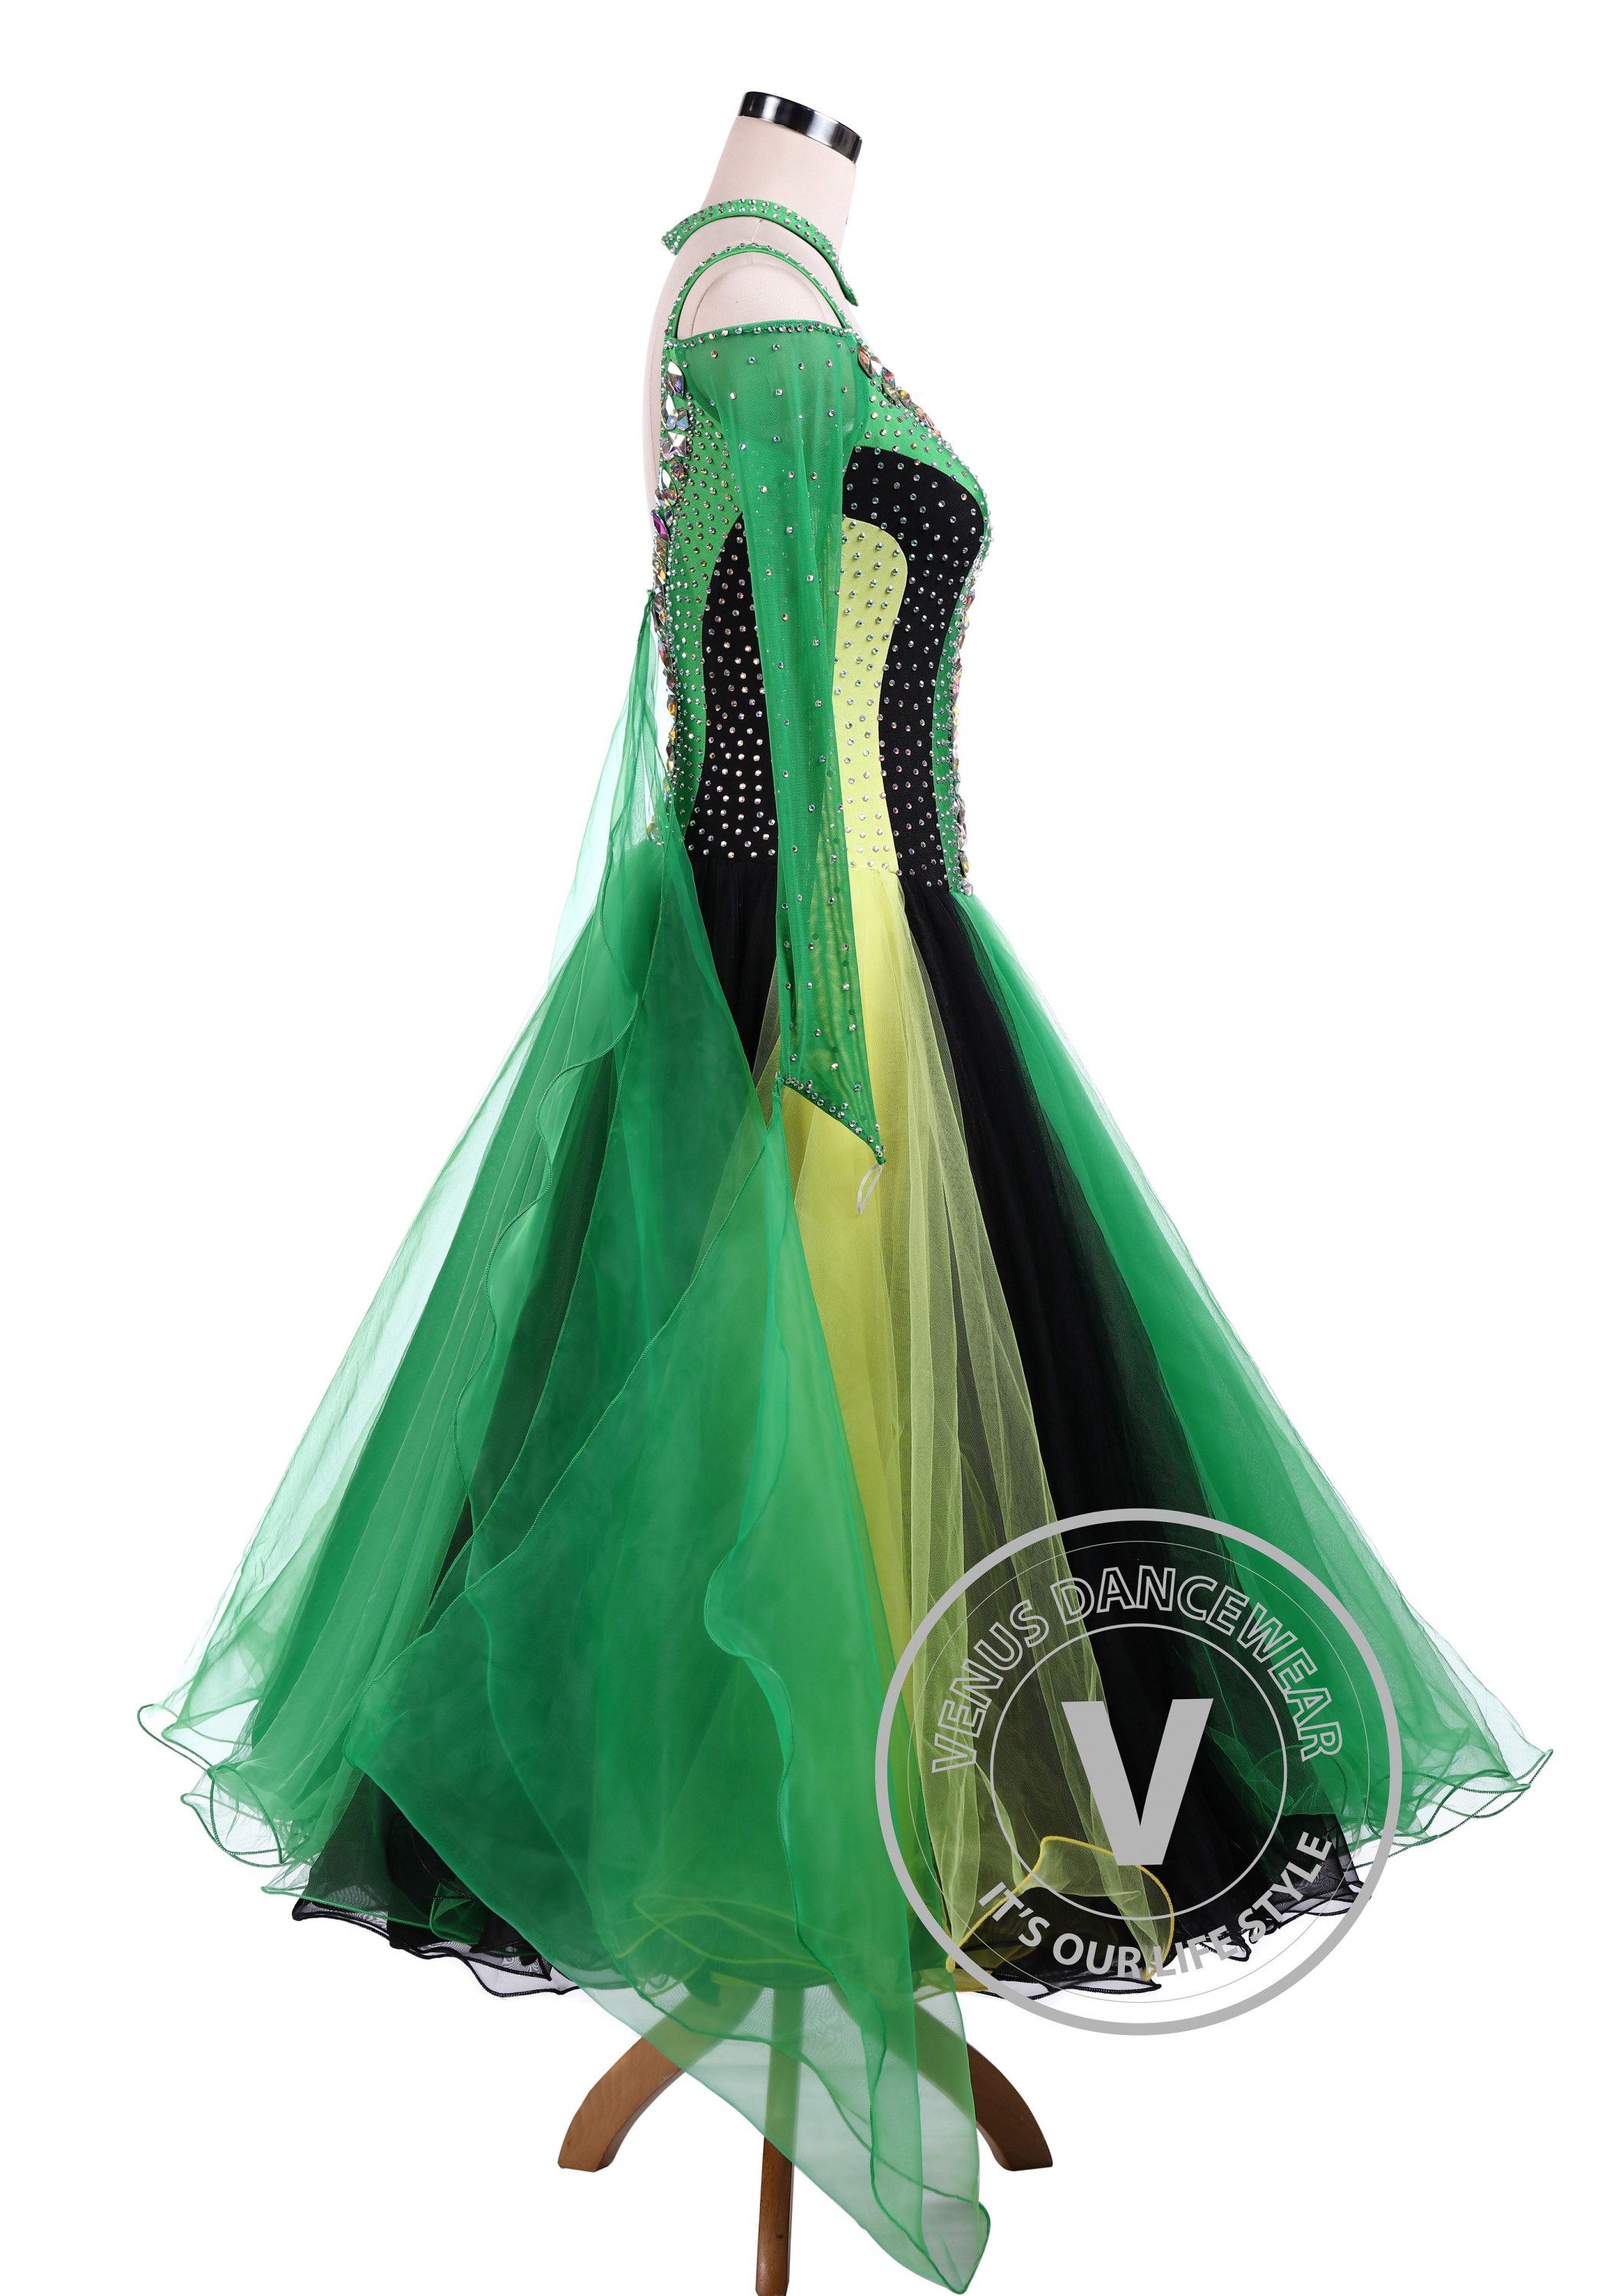 B8099 women Ballroom standard Tango Waltz Quickstep Dress UK 8 US 6  green